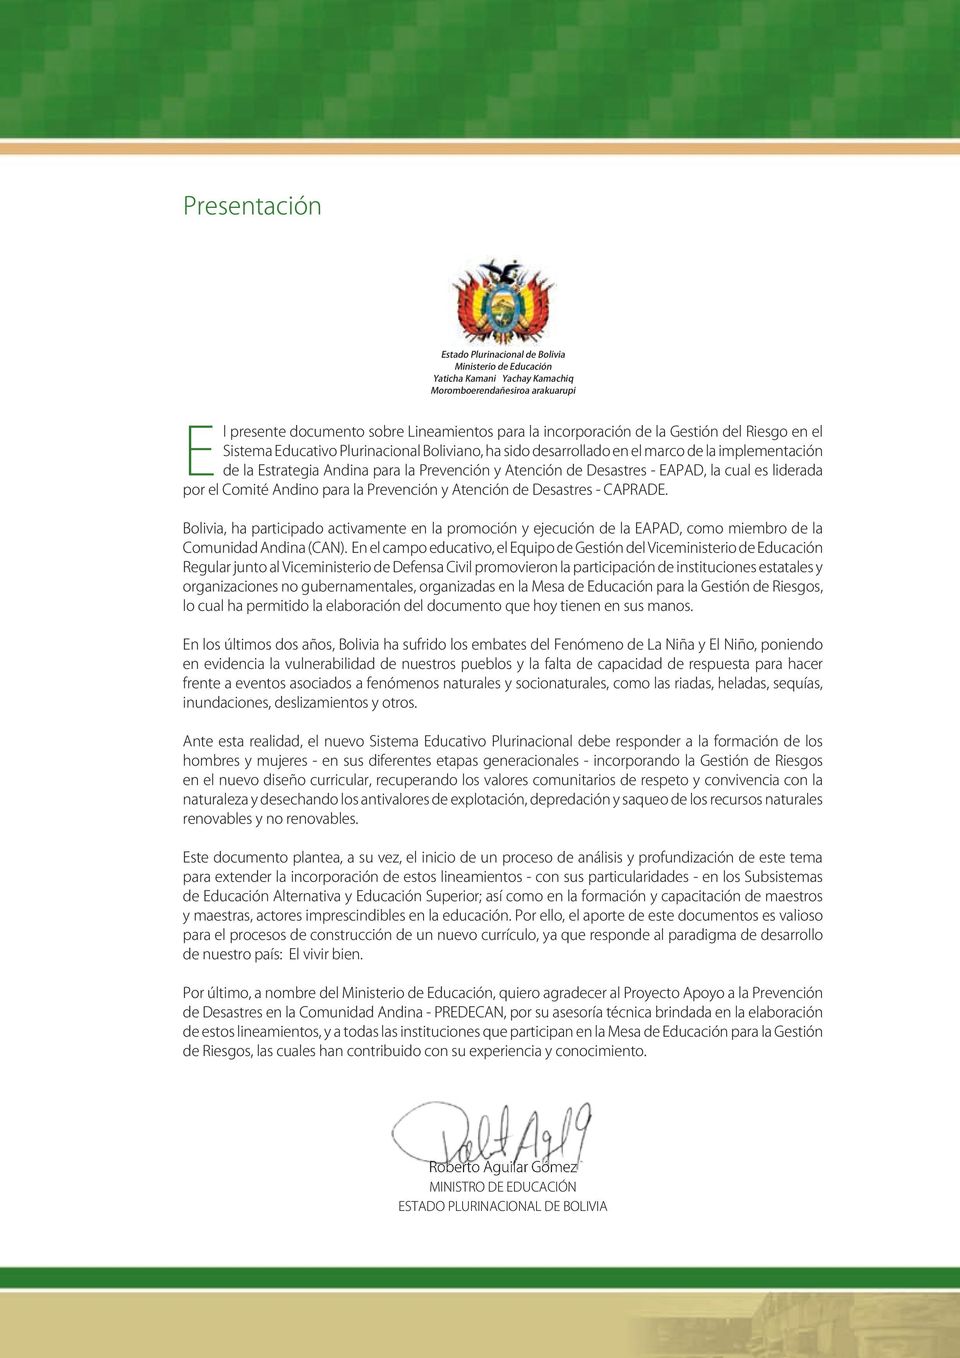 EAPAD, la cual es liderada por el Comité Andino para la Prevención y Atención de Desastres - CAPRADE.